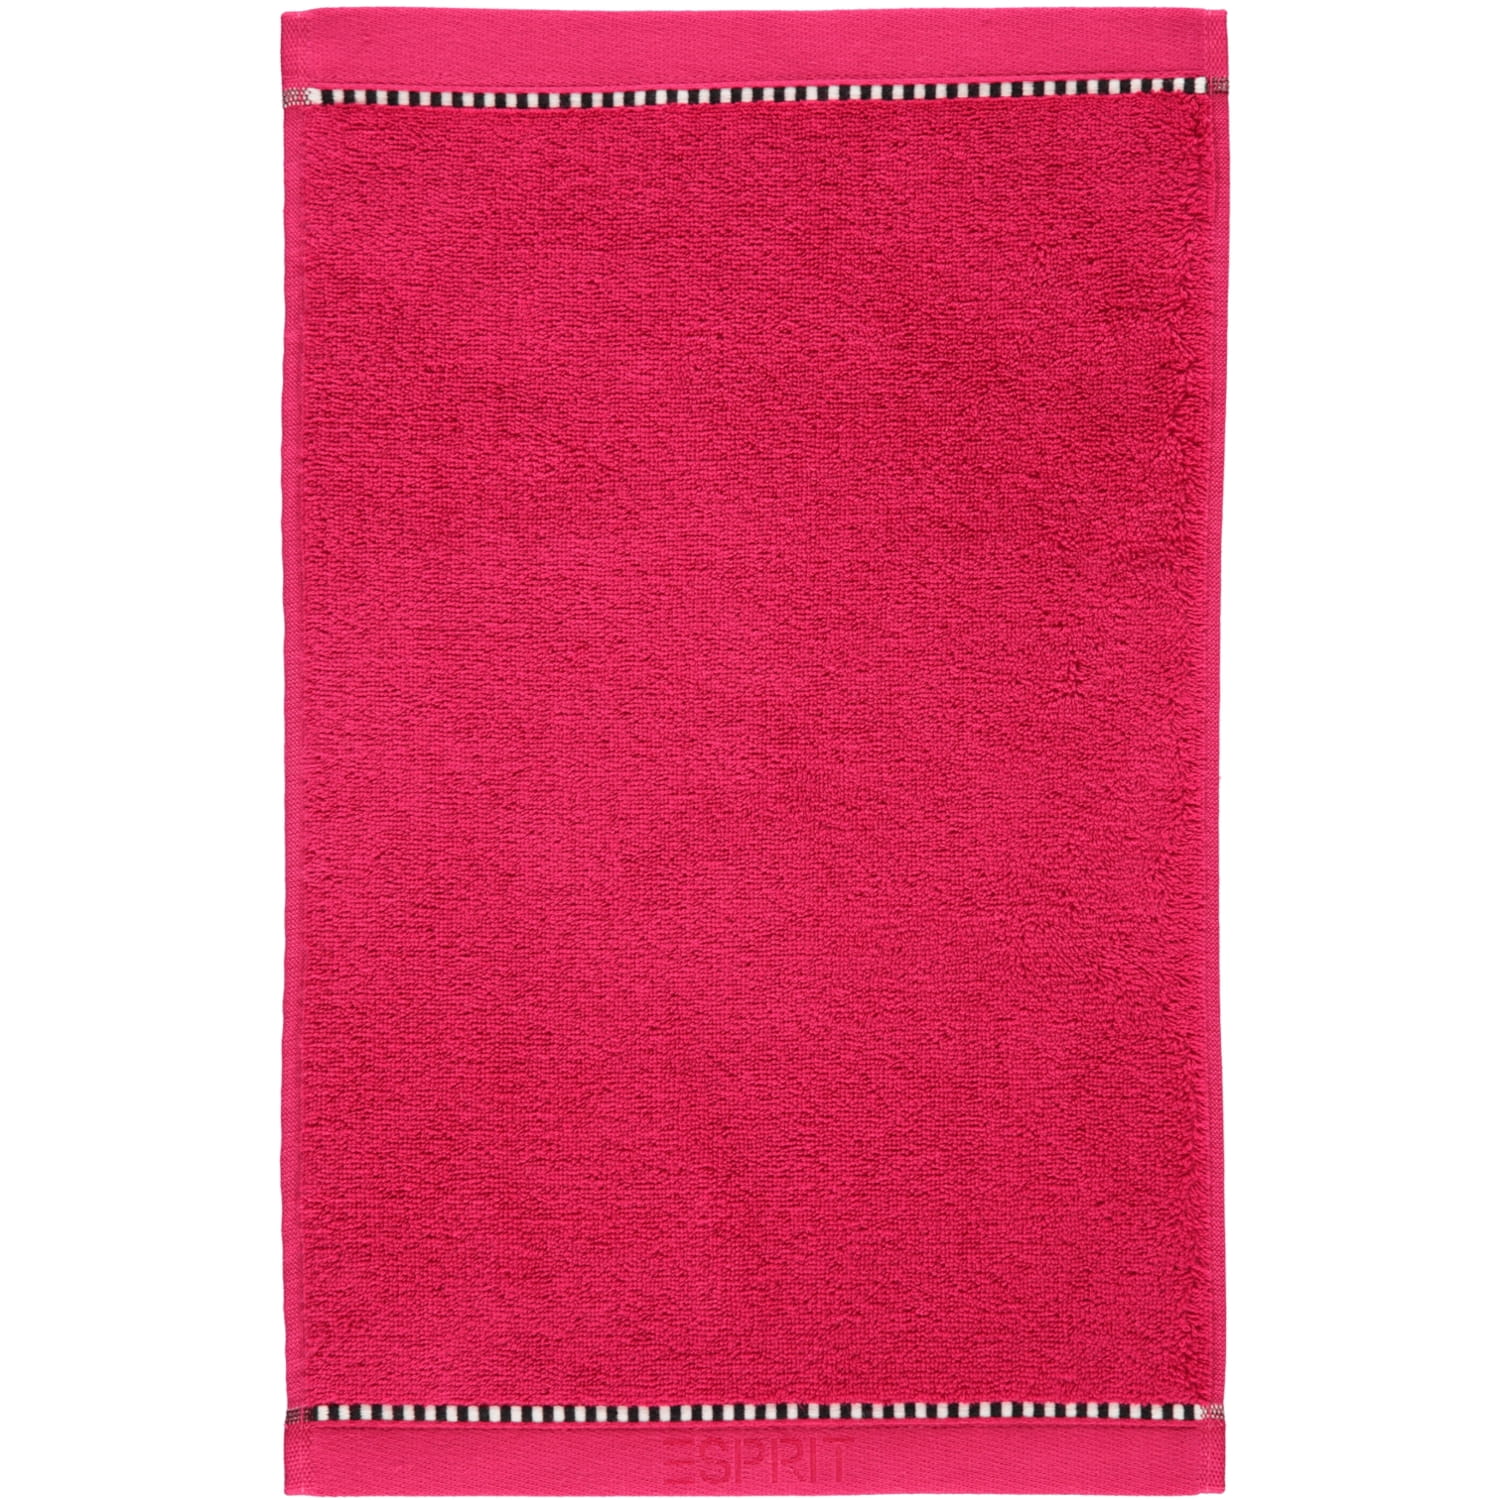 Solid | ESPRIT - ESPRIT | Handtücher Esprit raspberry Marken Farbe: 362 | Box -